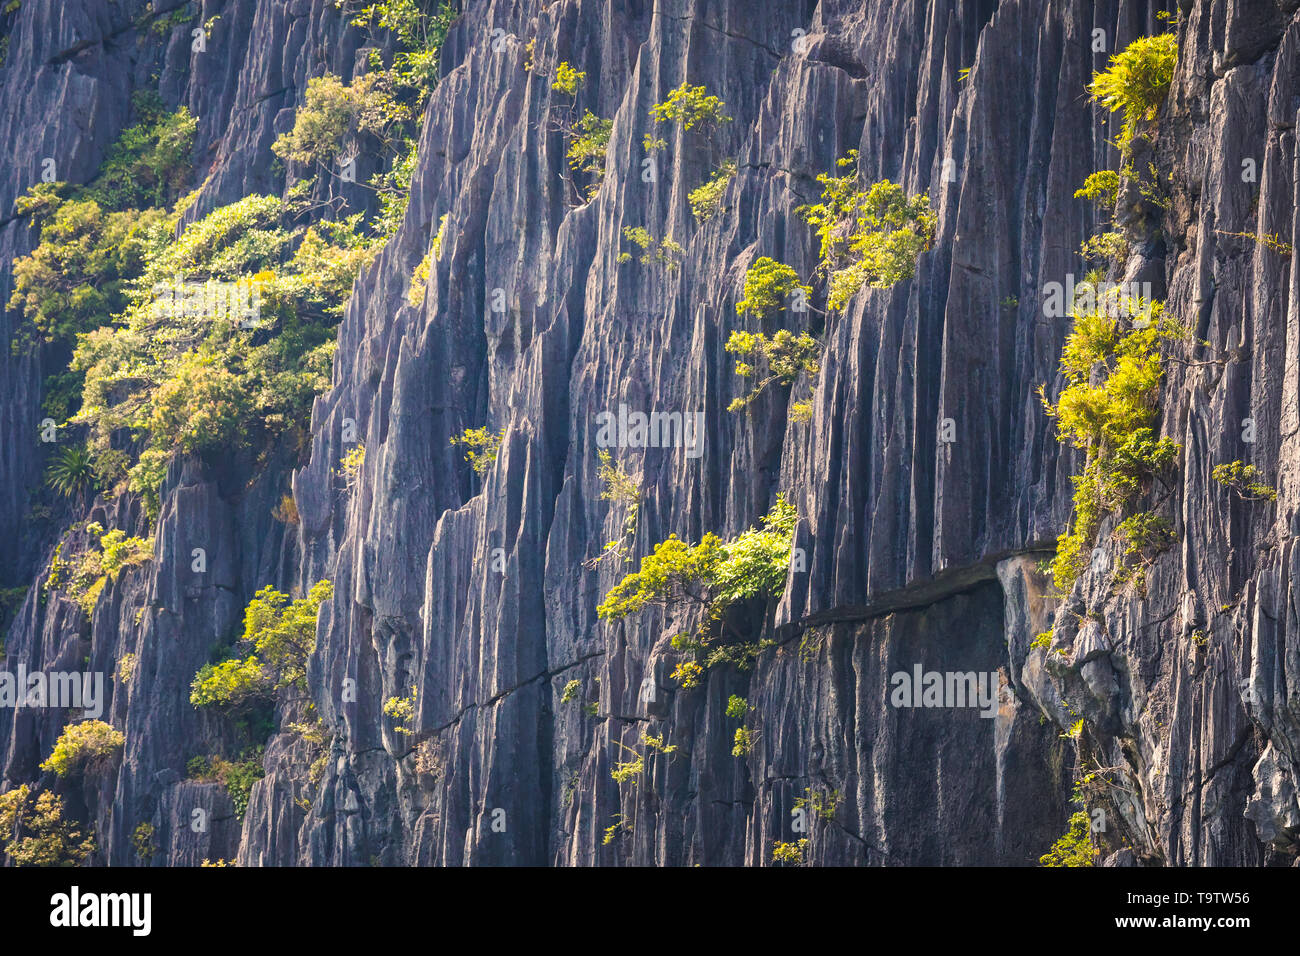 Closeup of a karst mountain , rock texture Stock Photo